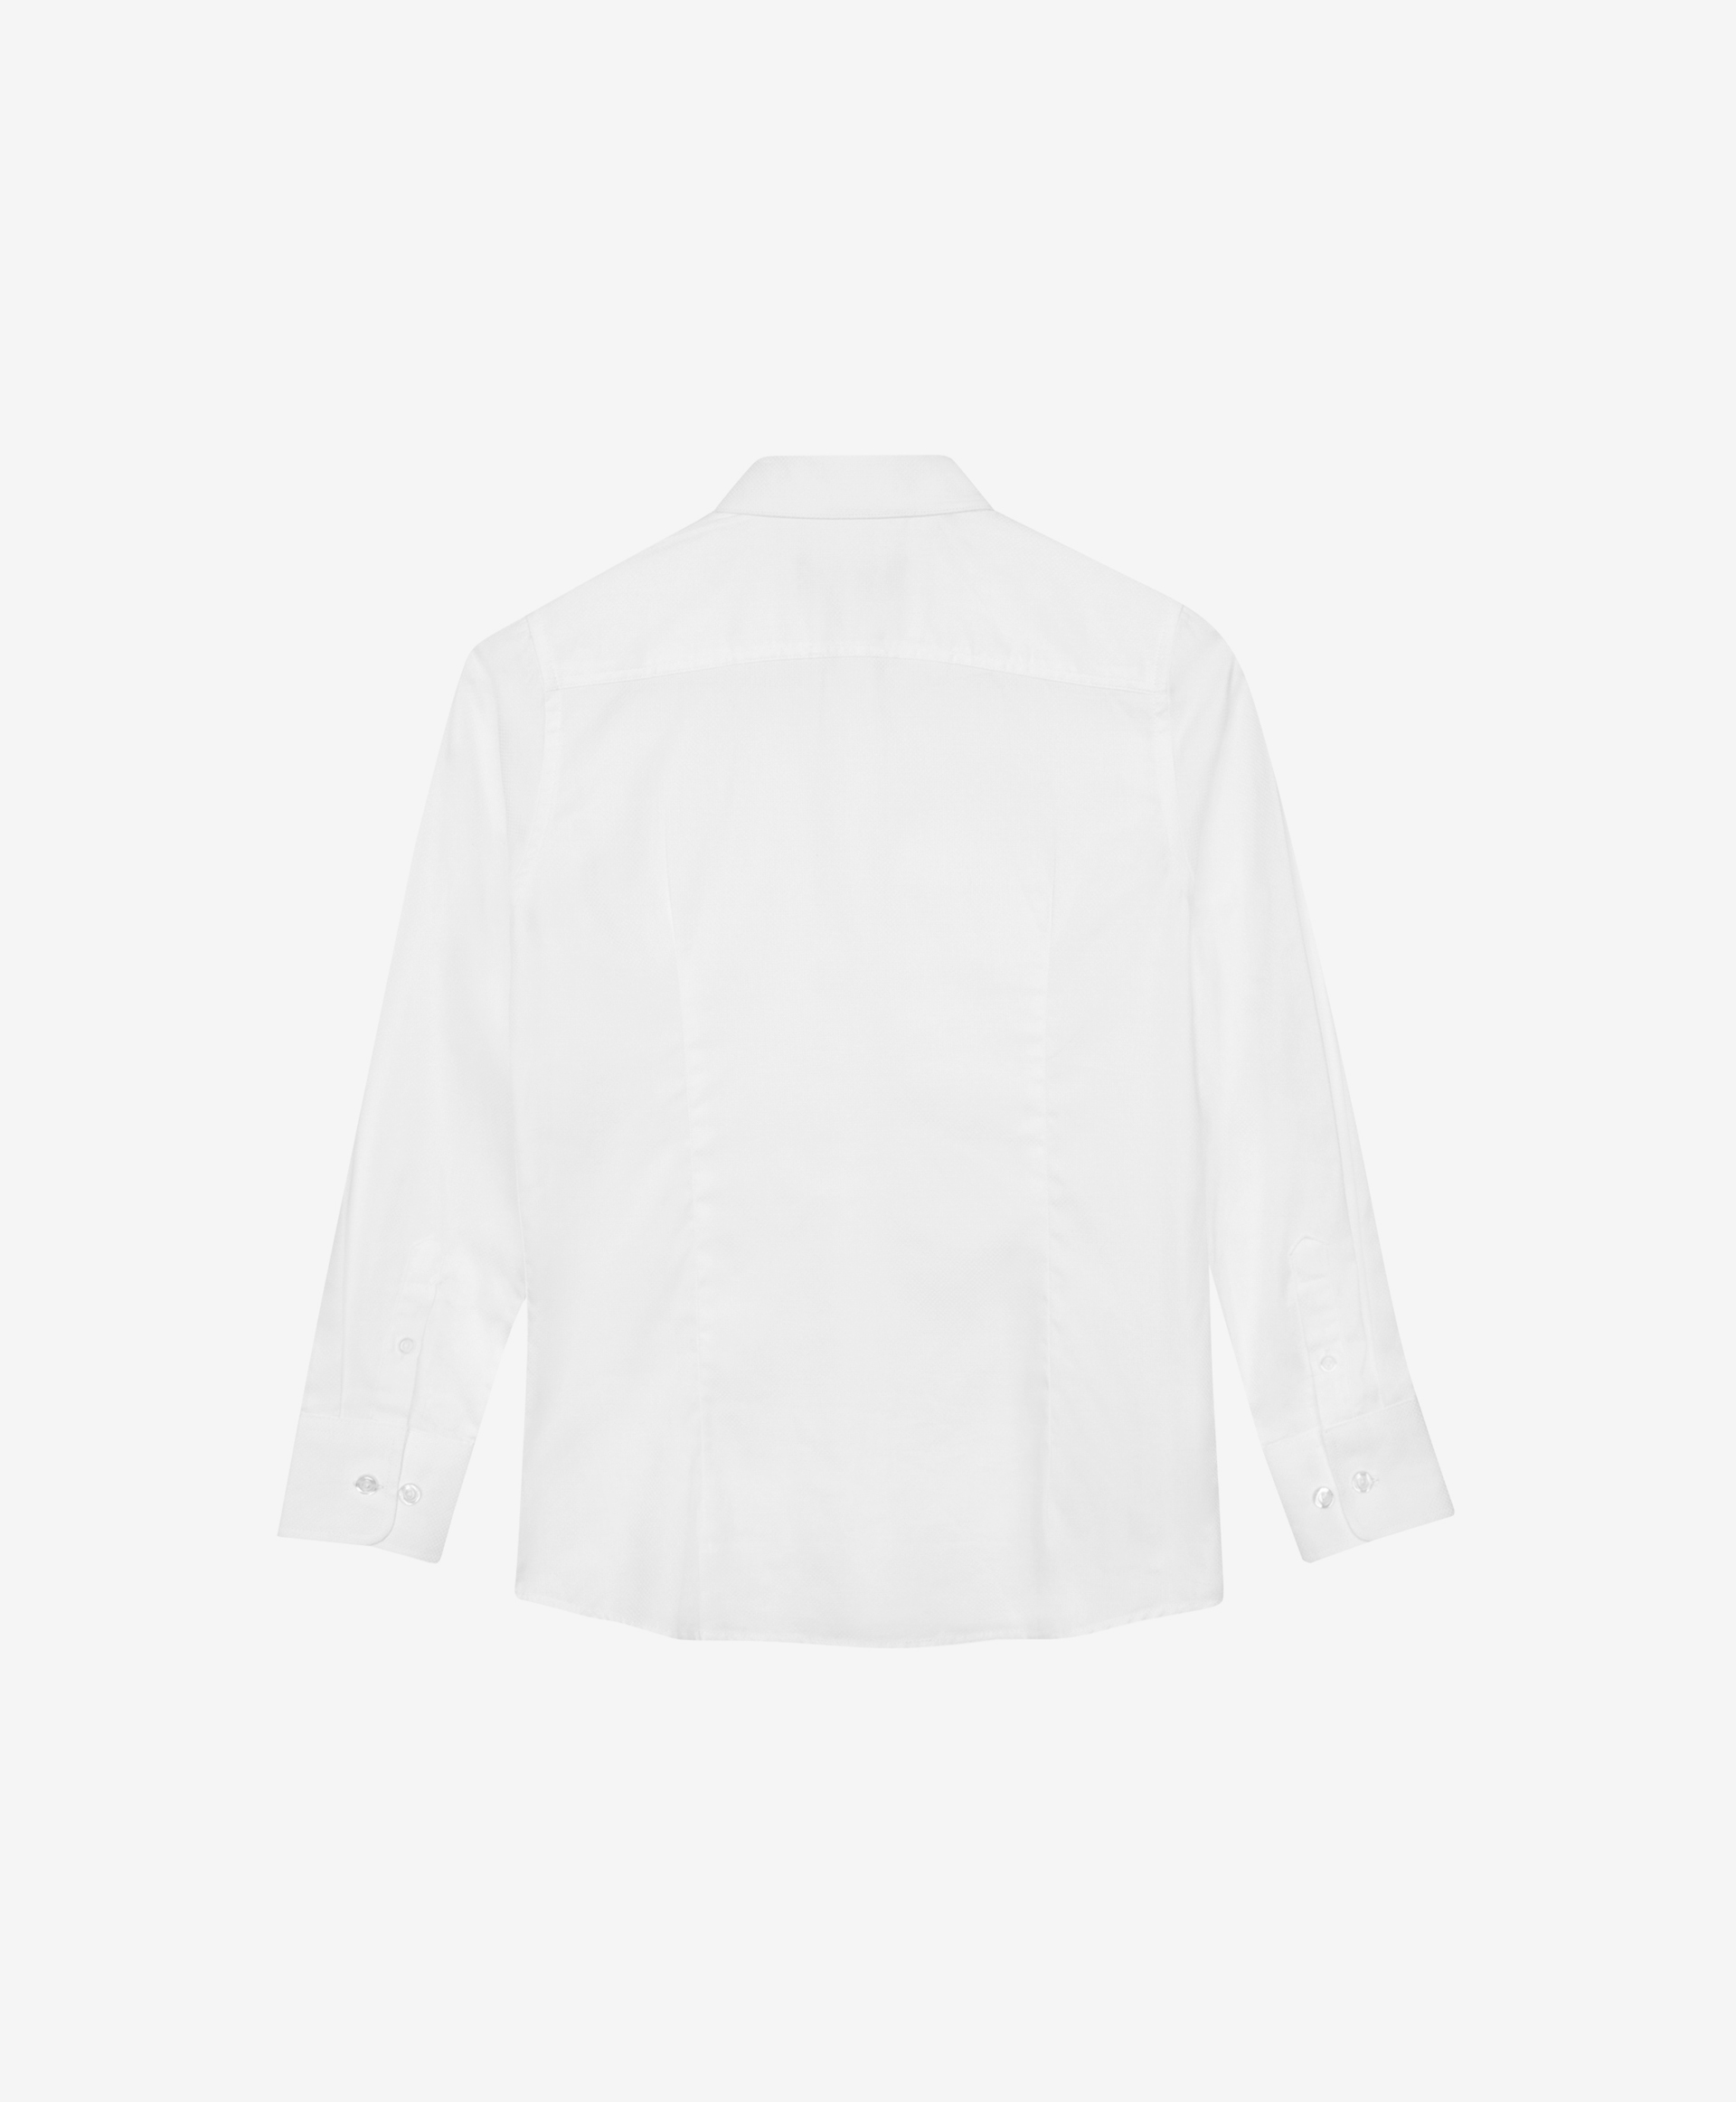 Сорочка белая с длинным рукавом Gulliver 200GSBC2302, размер 170, цвет белый - фото 4